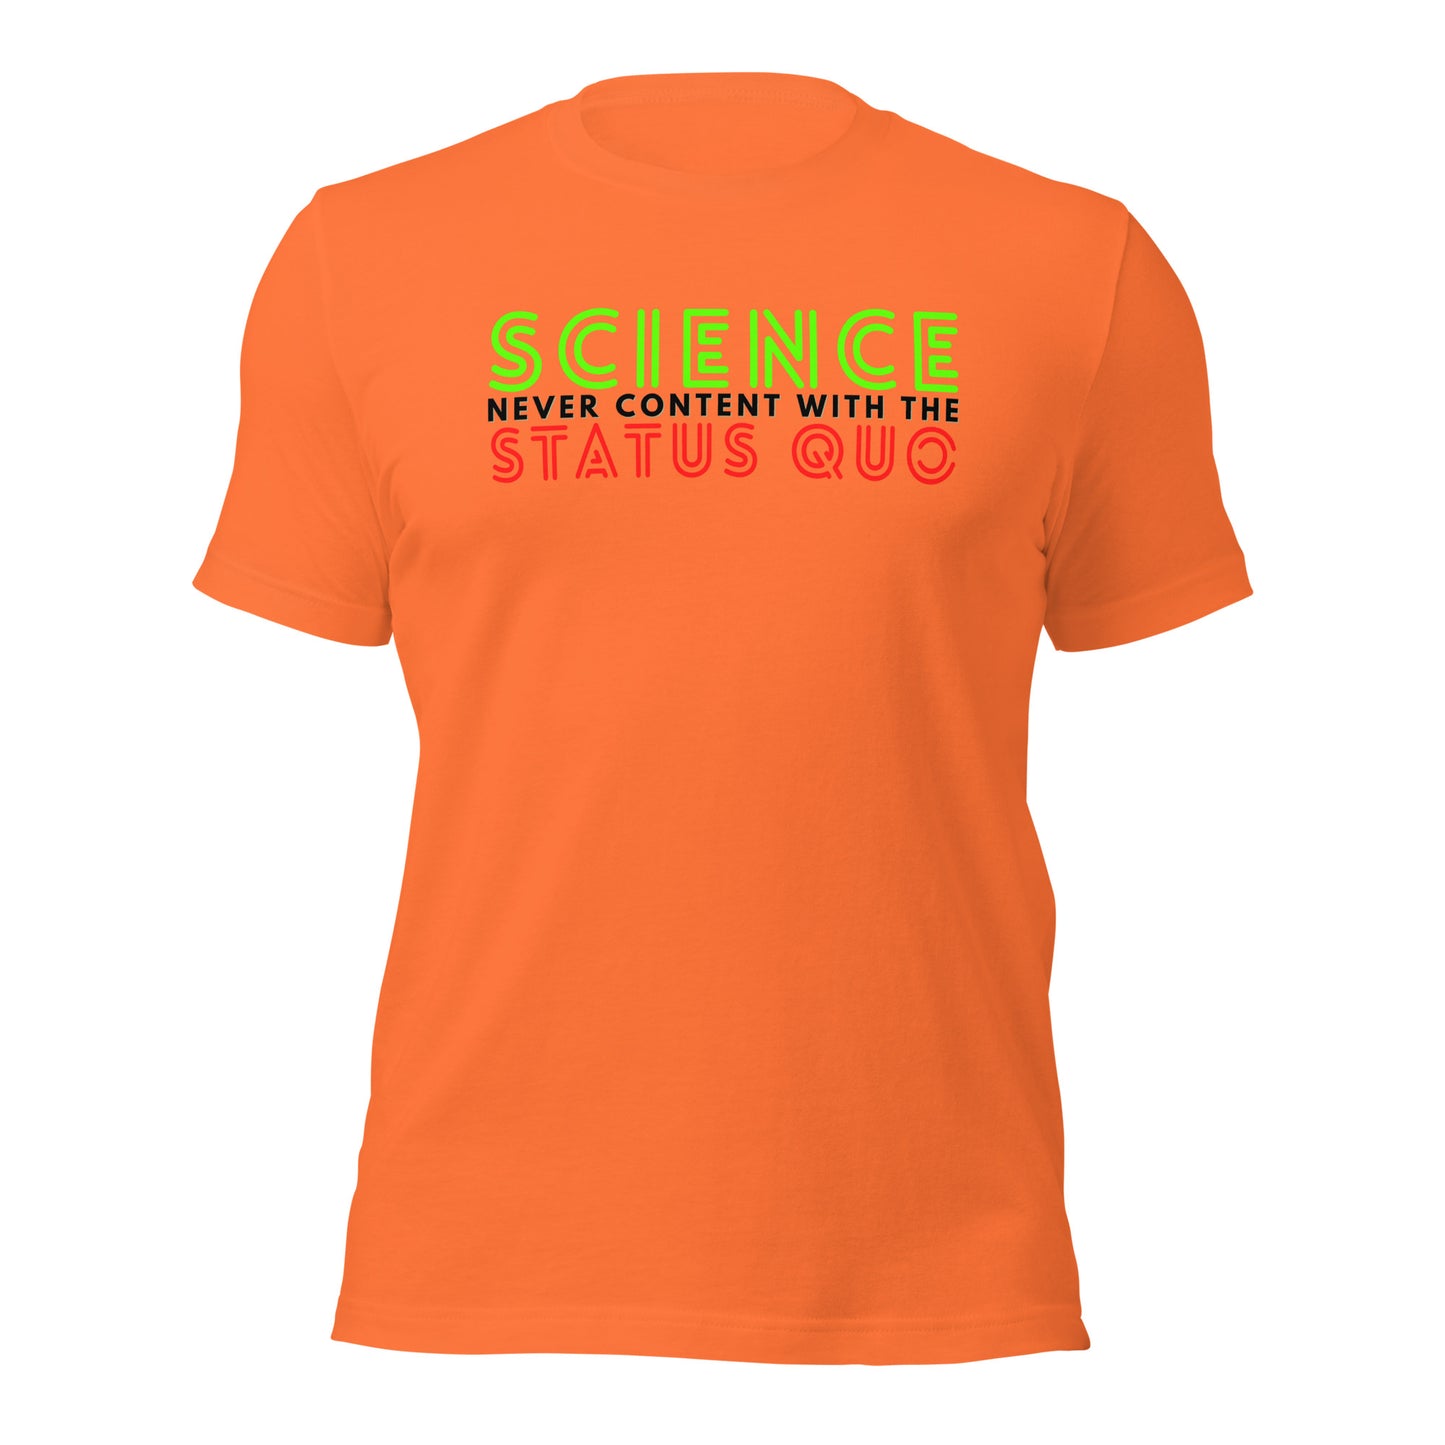 SCIENCE Status Quo 2 Unisex t-shirt